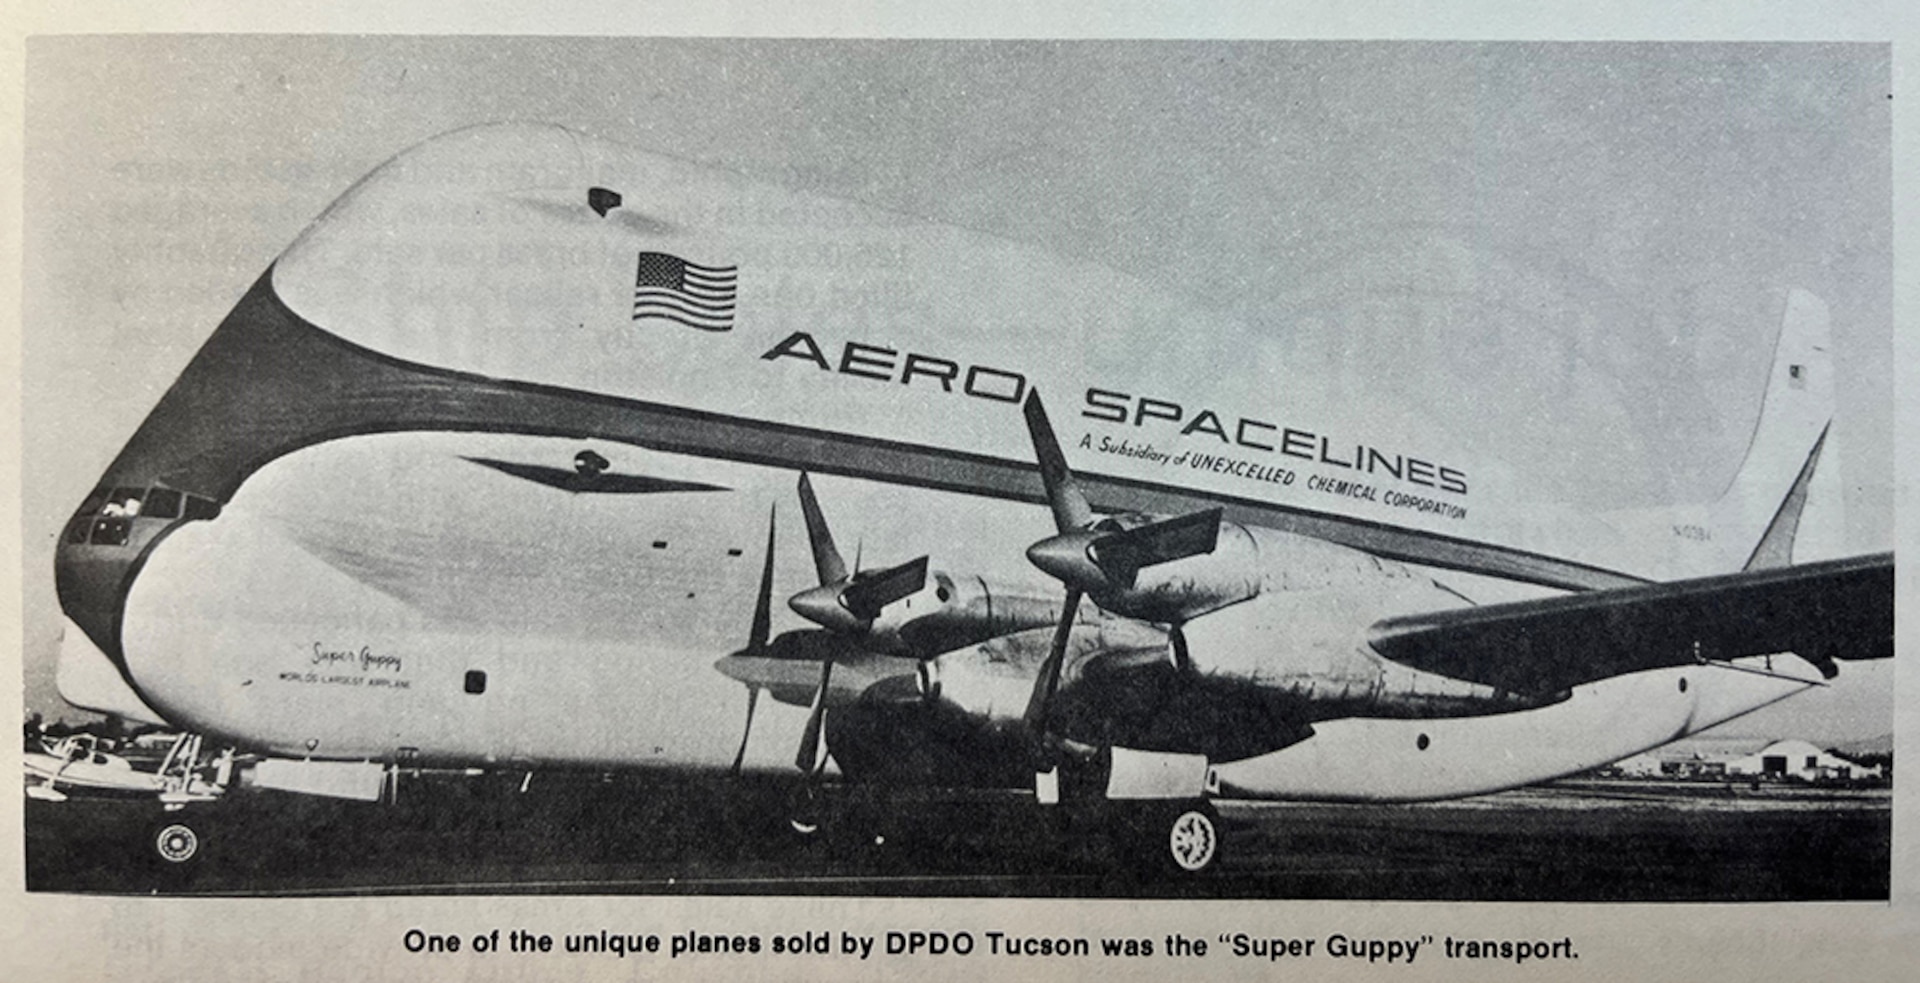 Large, strangely shaped airplane.